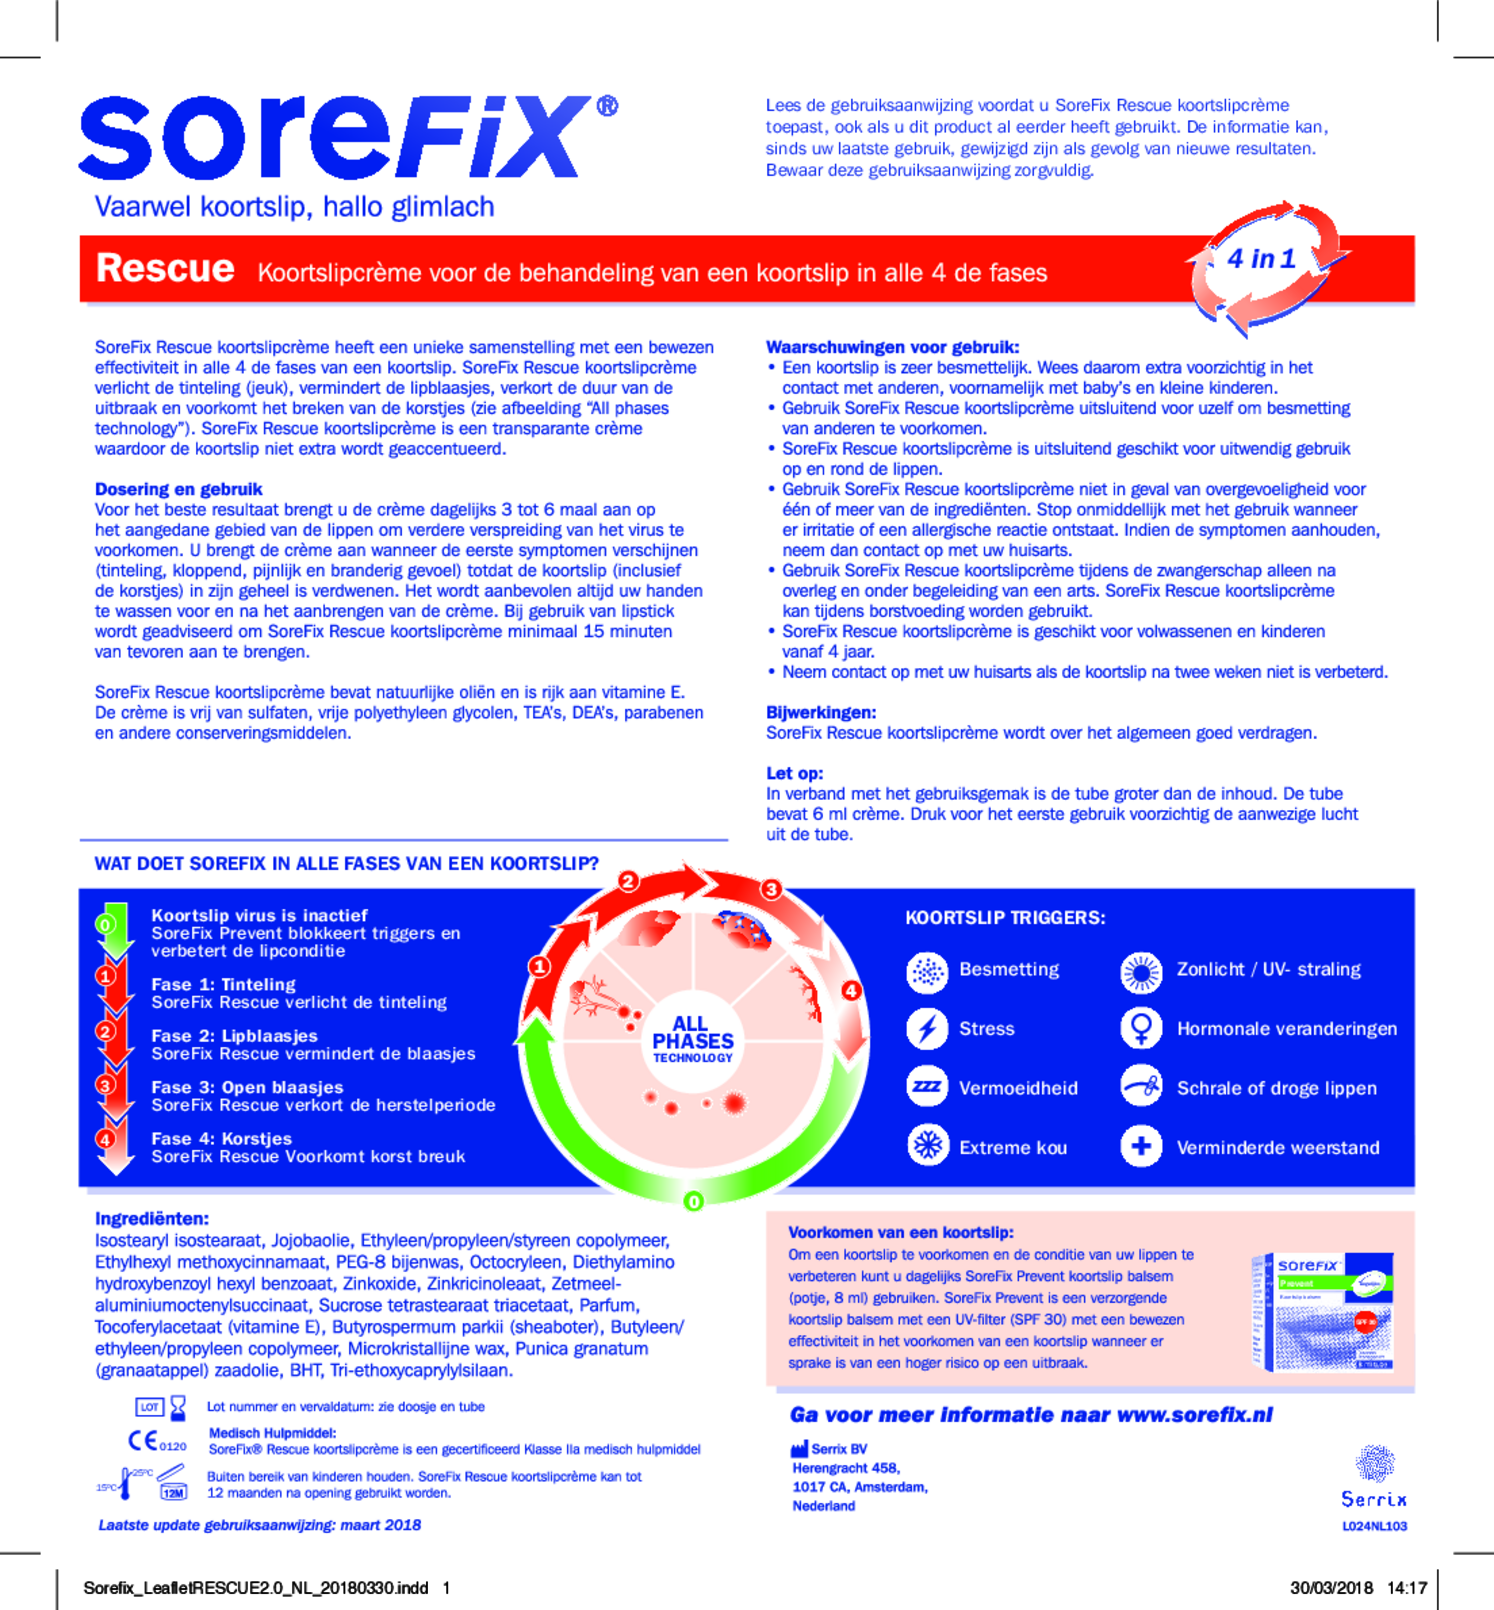 SoreFix Koortslip Combi - Voorkomen en Genezen afbeelding van document #1, gebruiksaanwijzing